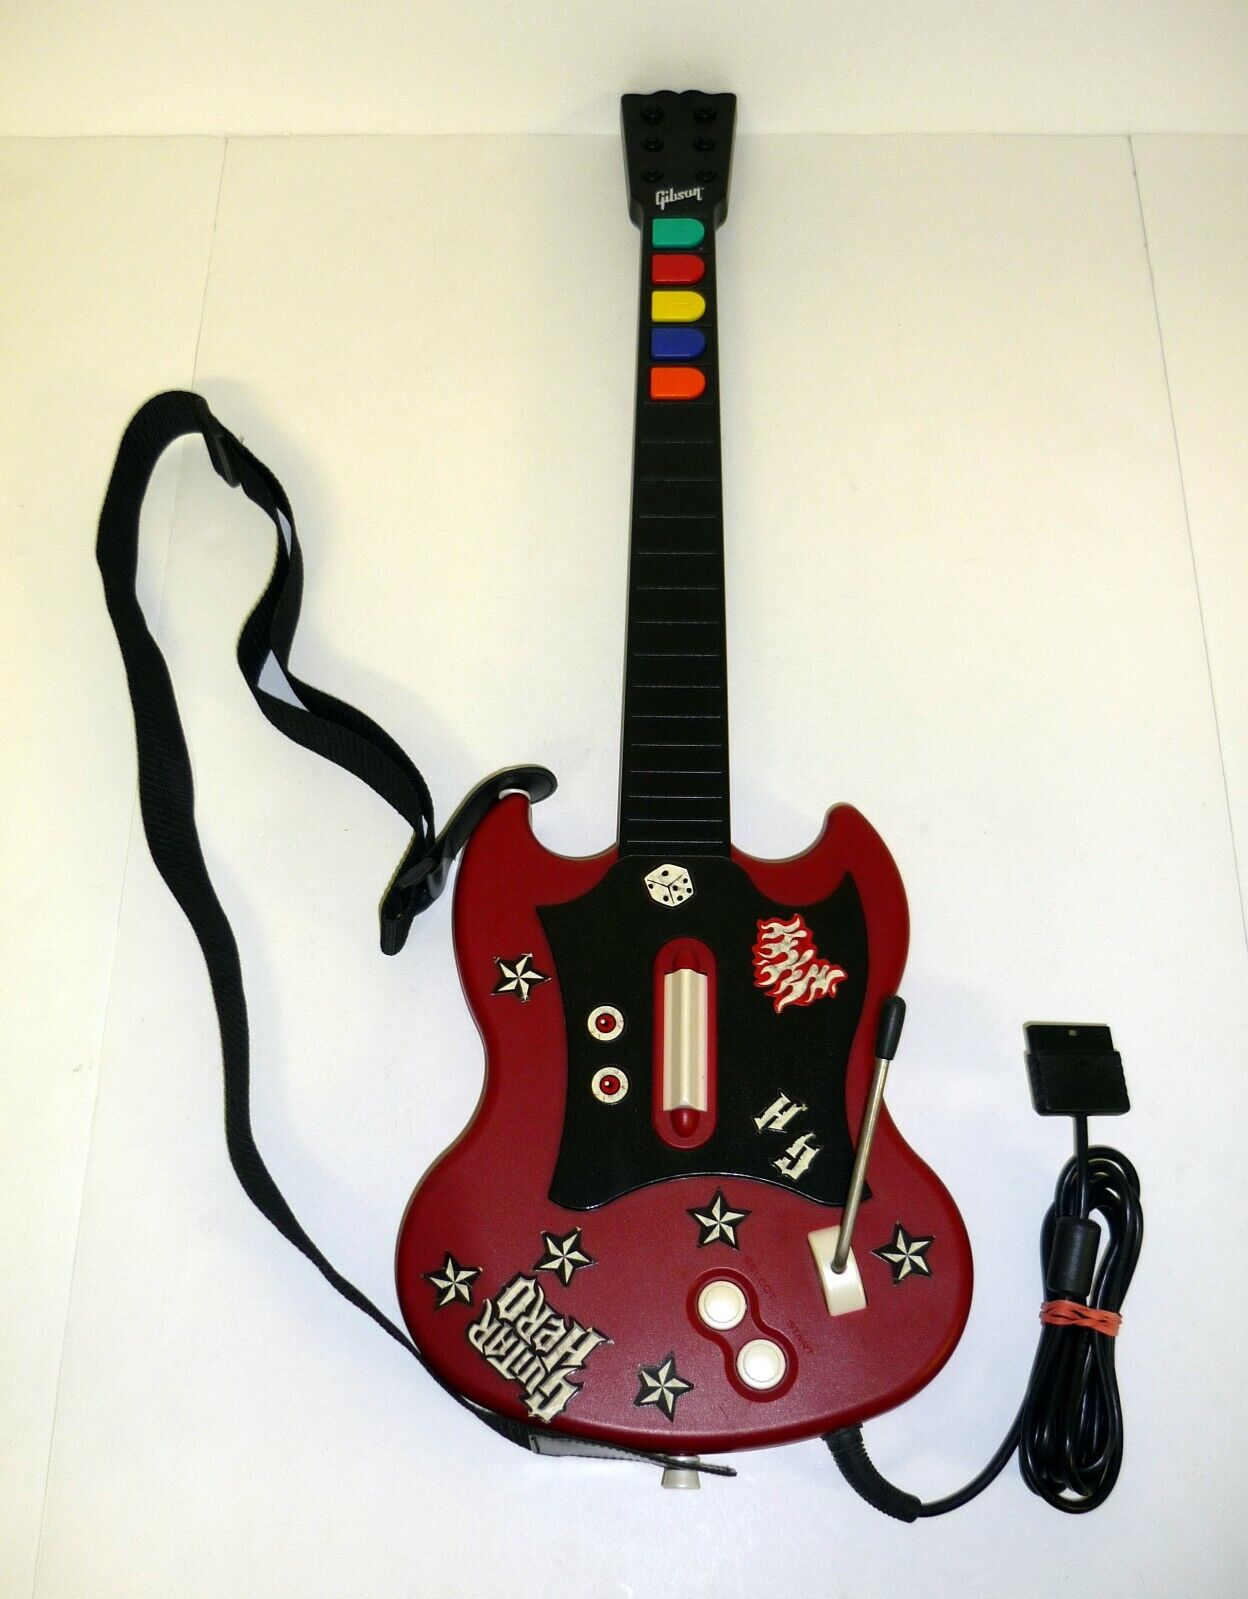 Red Octane Gibson SG Controller Guitar Model #PSLGH For Guitar Hero on PS2  | eBay